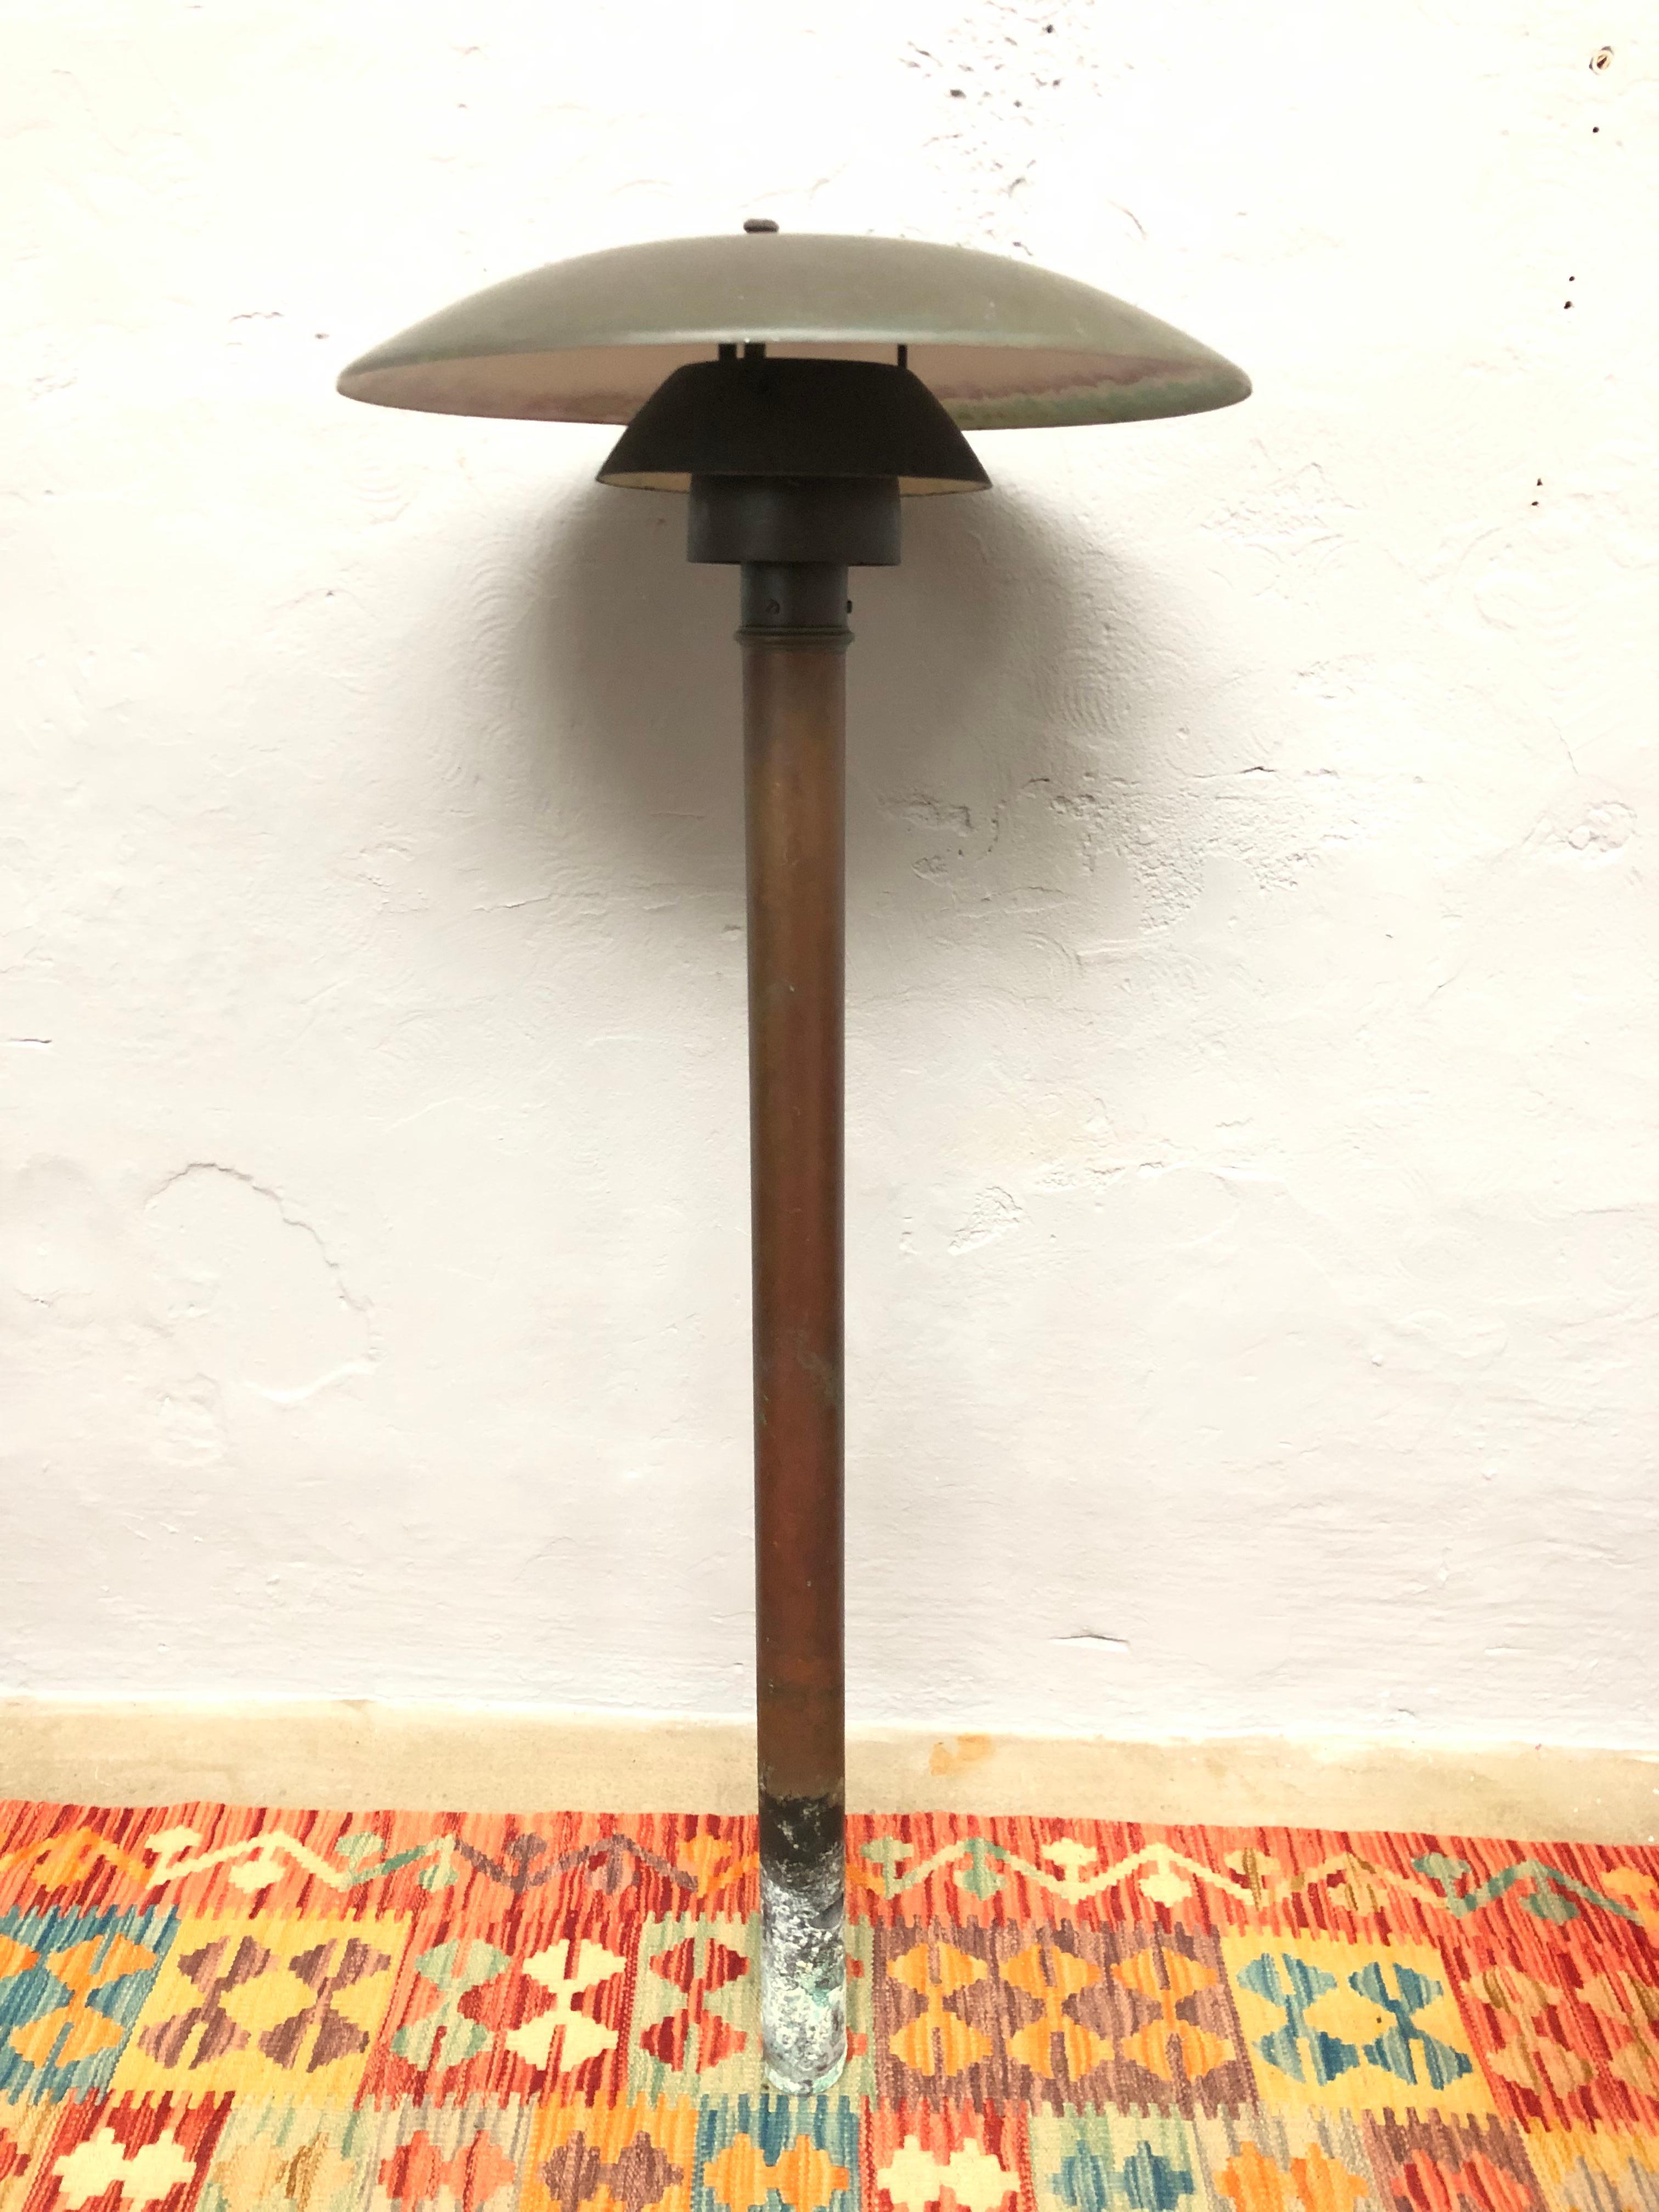 Rare lampe de jardin iconique en cuivre PH 4.5 de Poul Henningsen fabriquée au Danemark par Louis Poulsen dans les années 1960.
Cette lampe emblématique a été conçue pour la première fois en 1966 et n'a jamais cessé d'être un classique.
Cette lampe